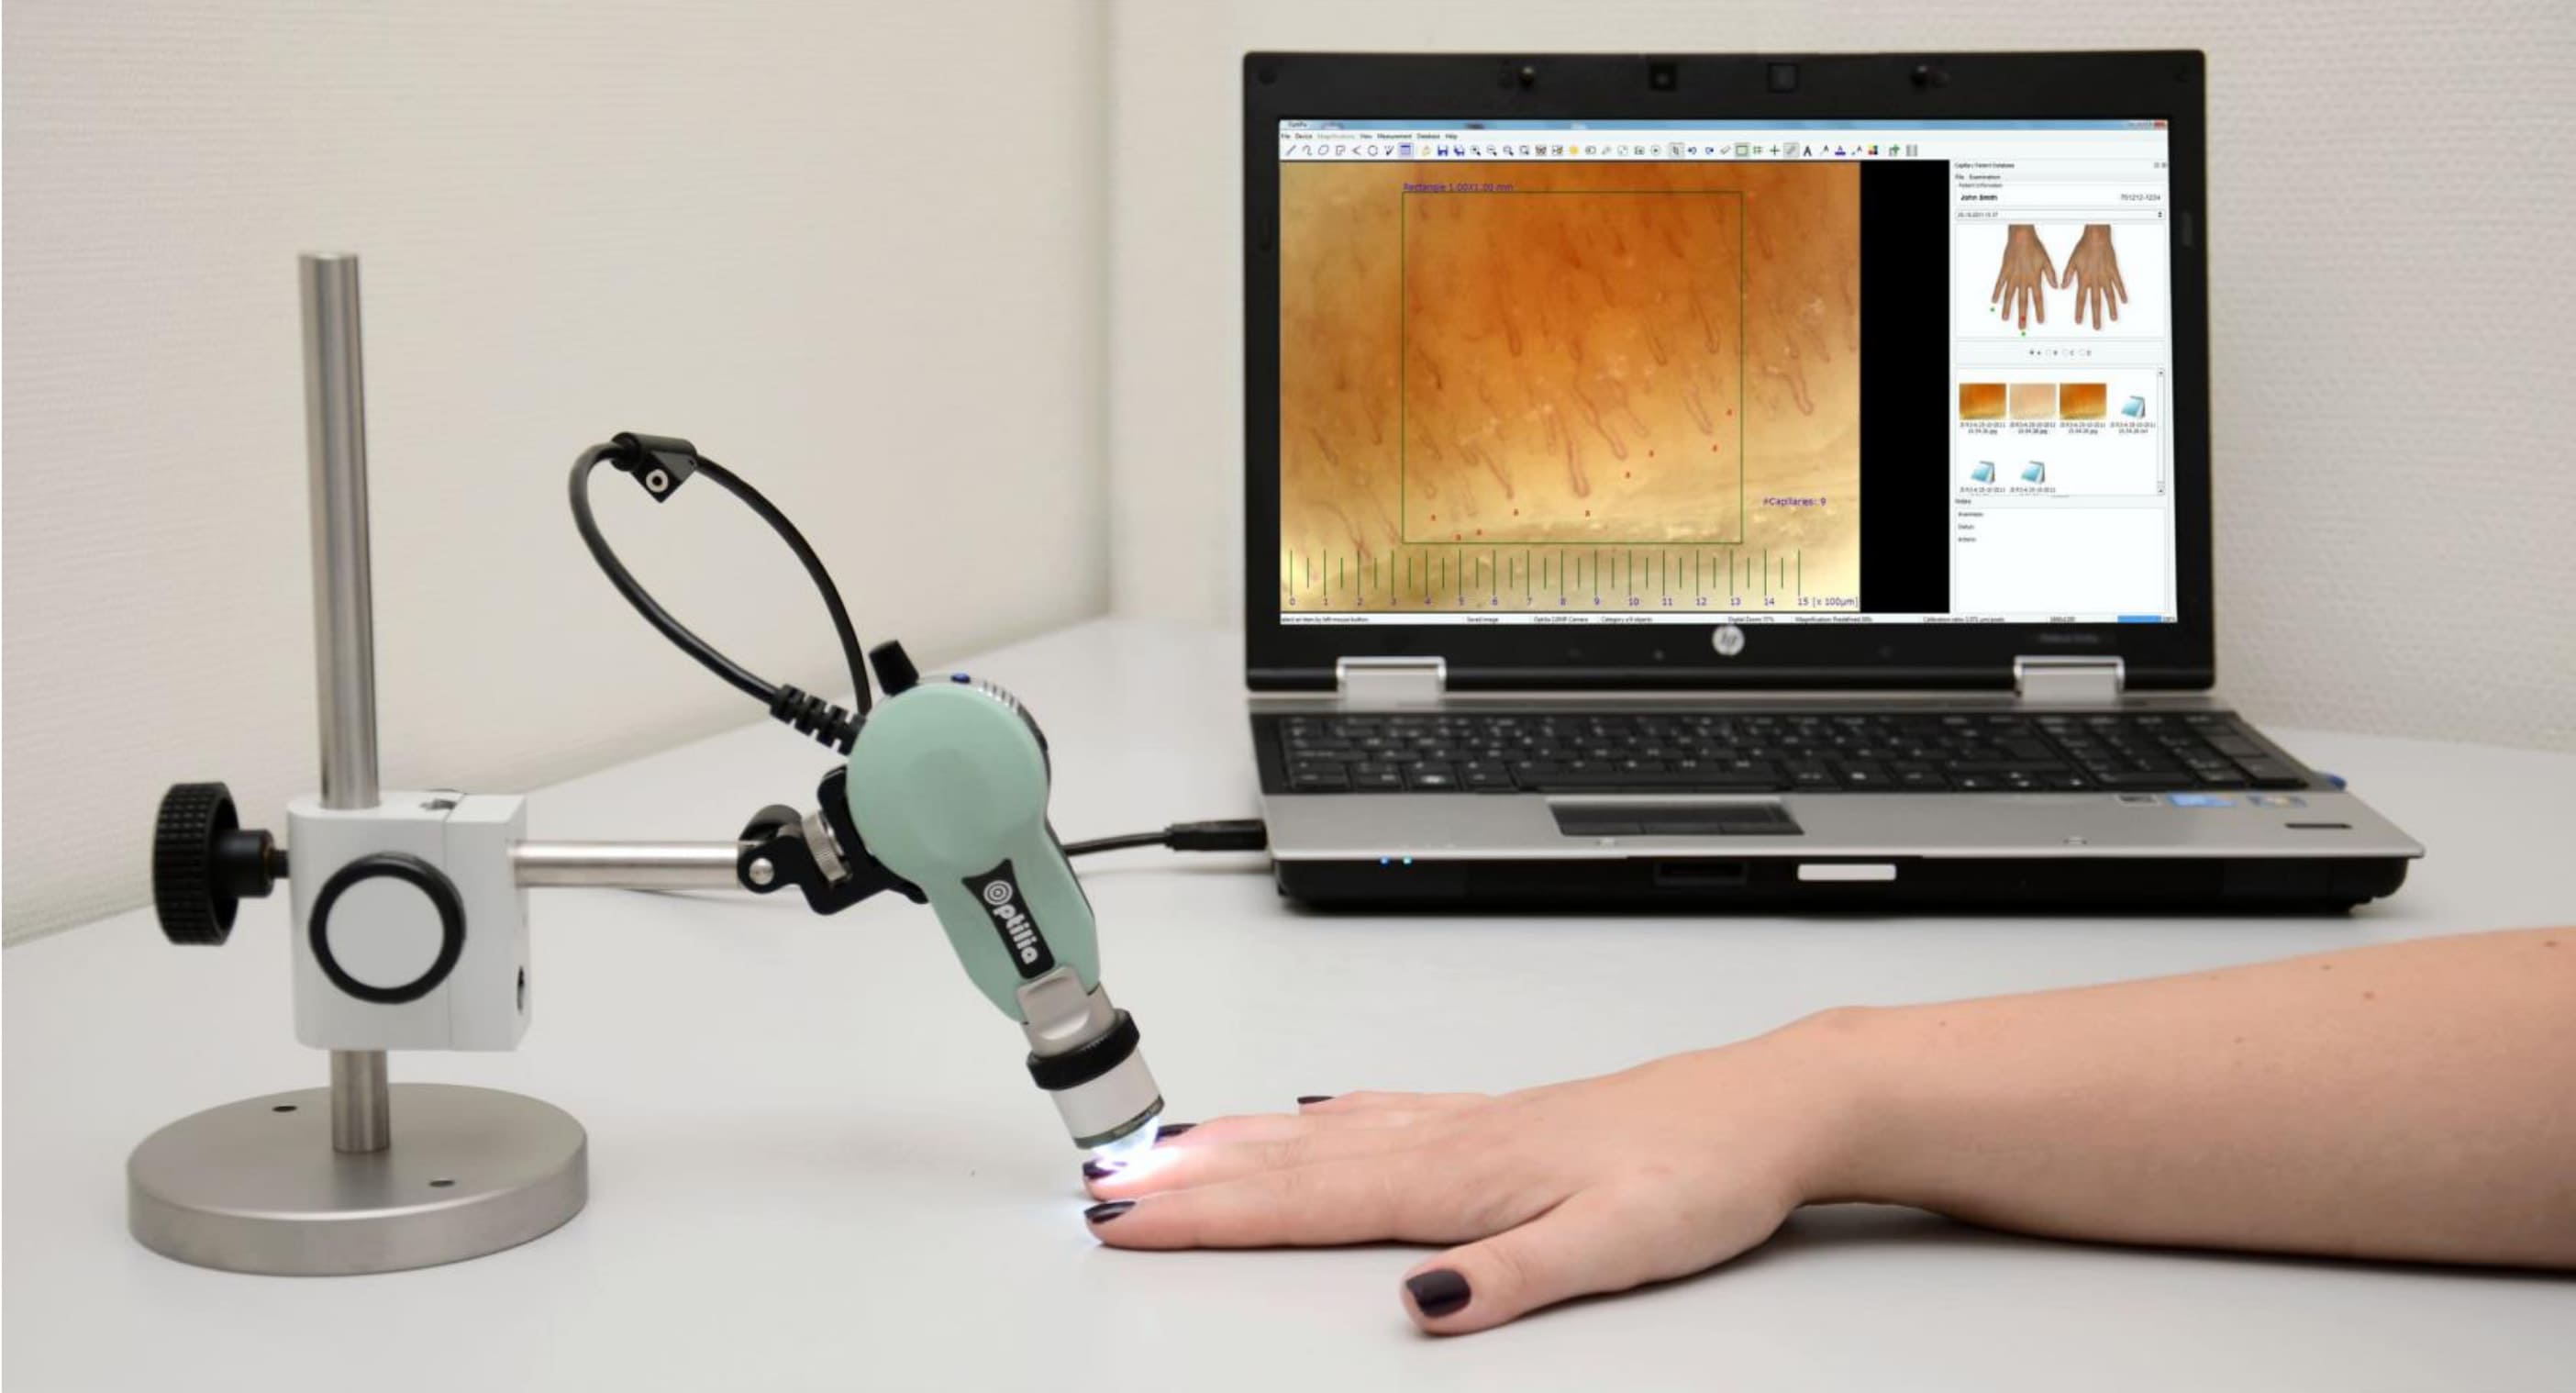 Procedura di capillaroscopia - I capillari alla base delle unghie sono osservati utilizzando un microscopio USB portatile collegato al computer